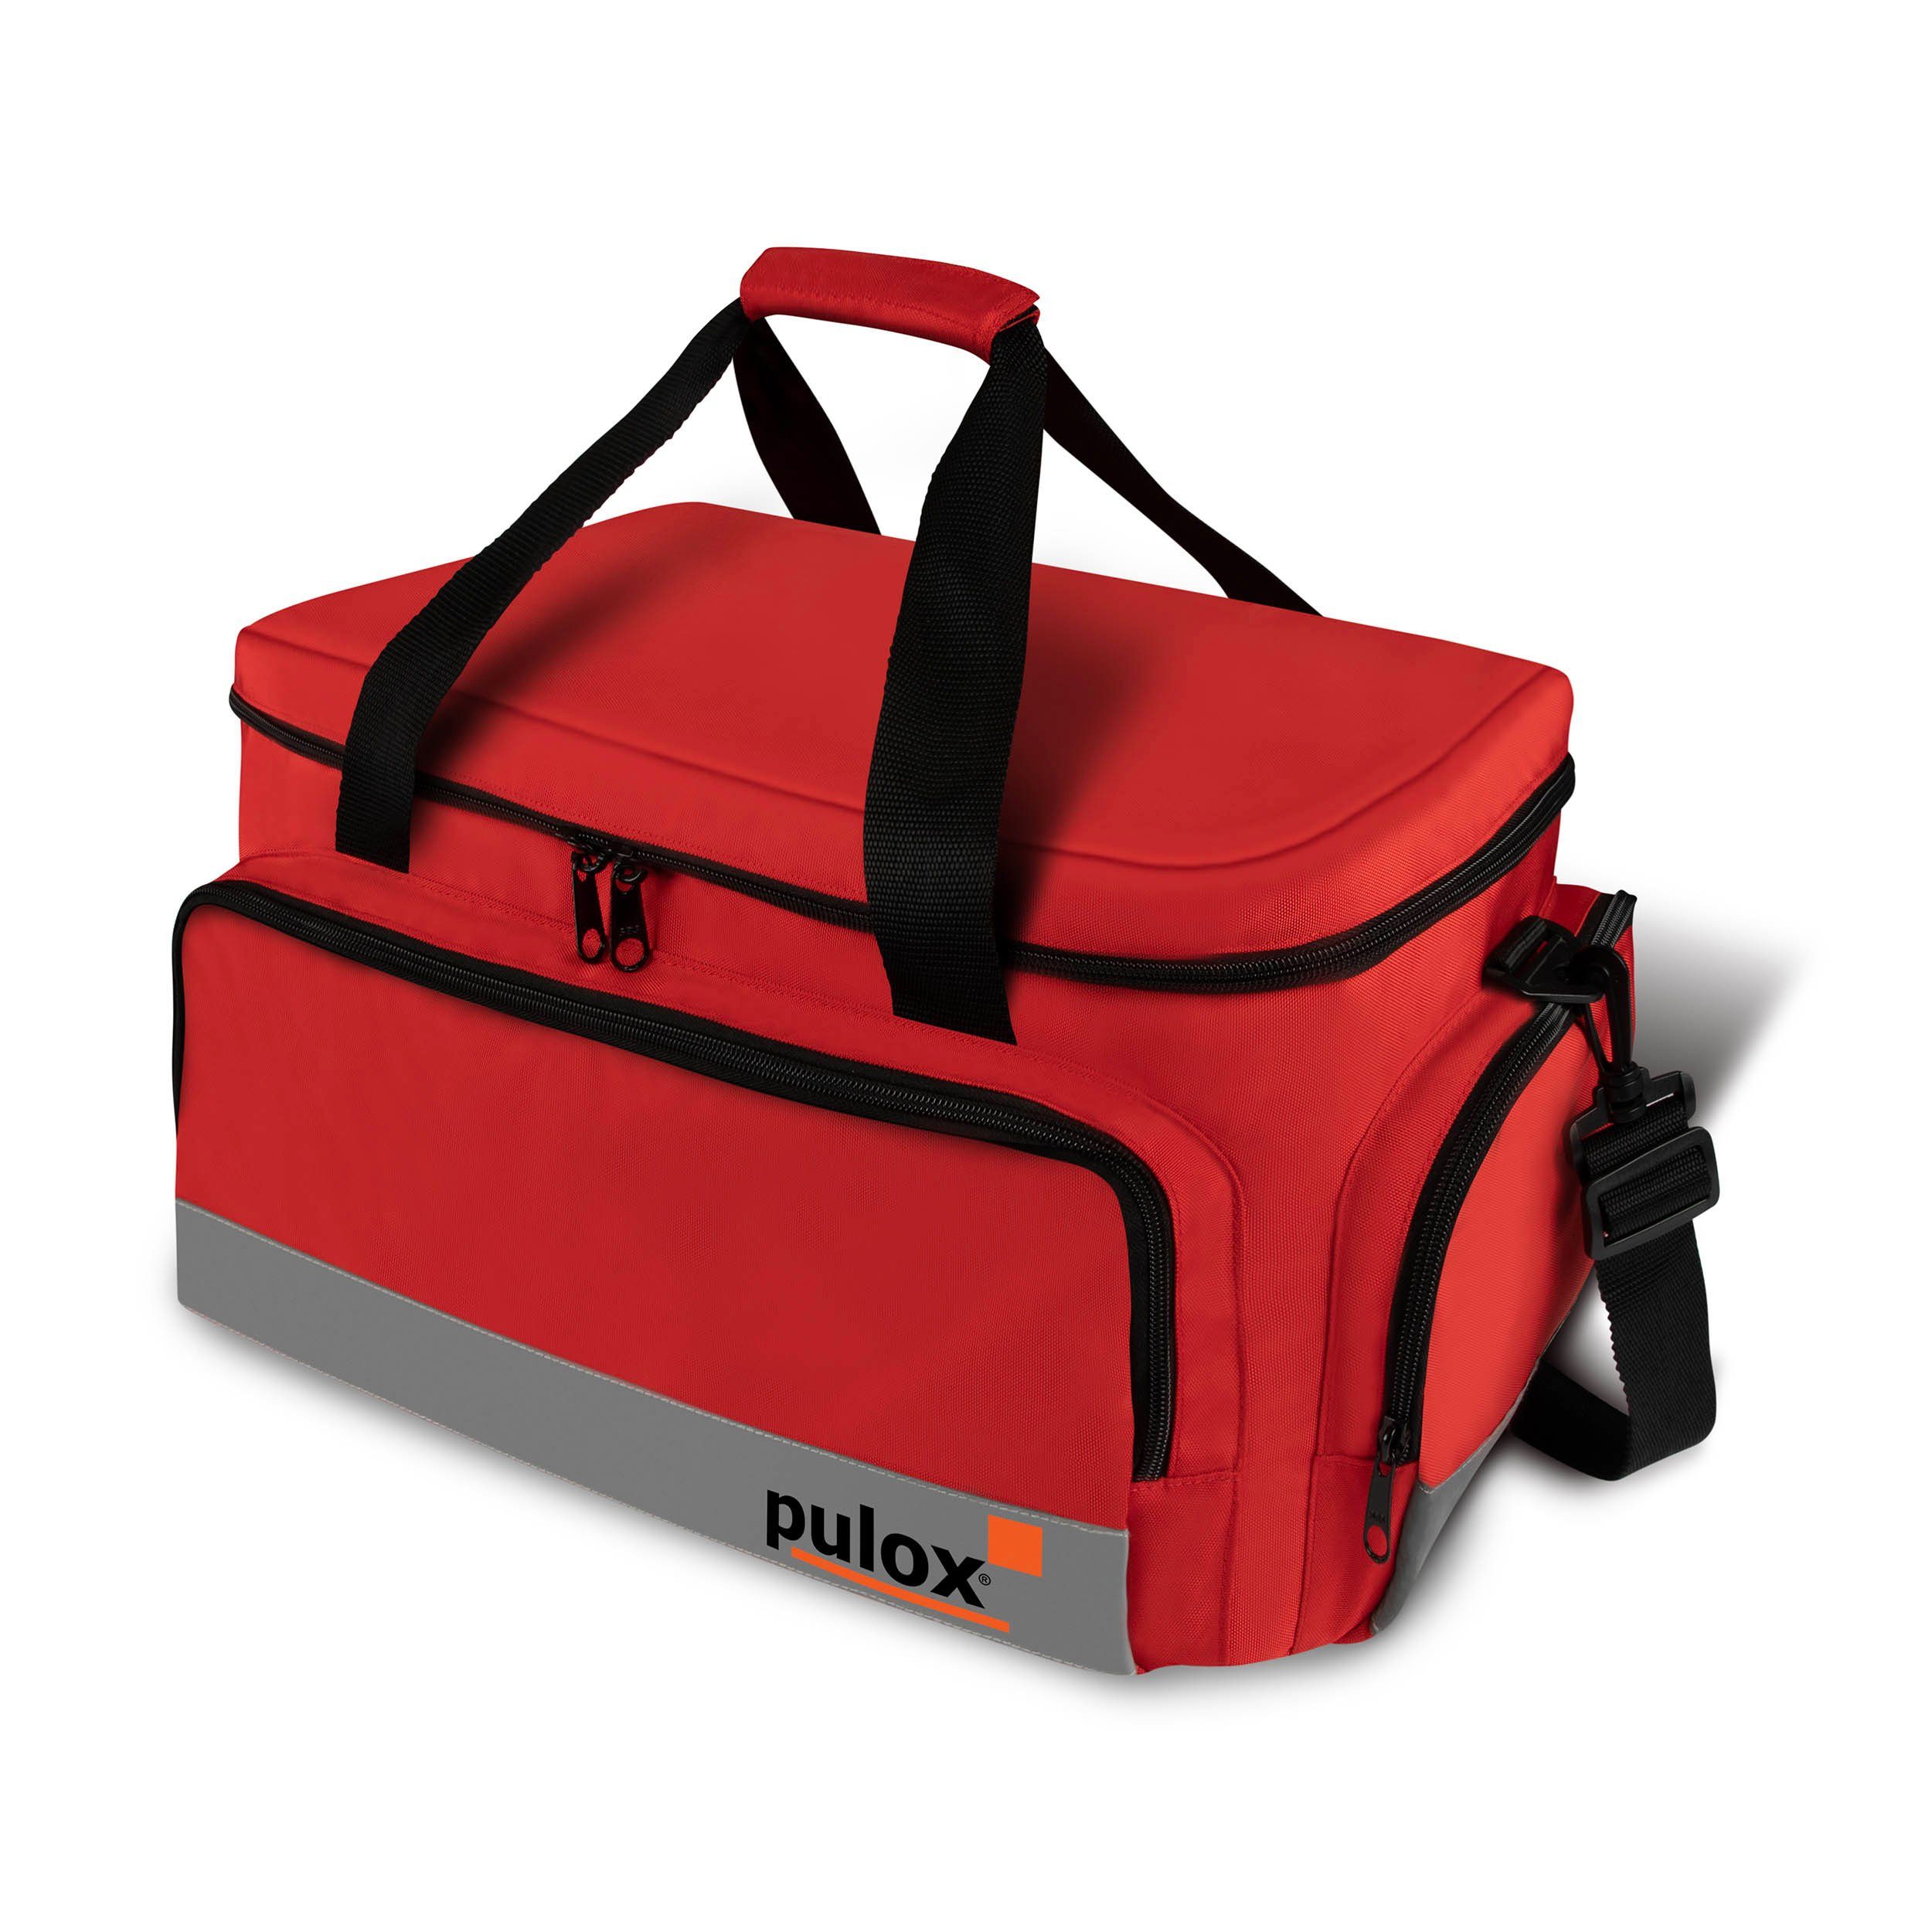 Pulox Erste Hilfe Rucksack, Notfallrucksack rot, aus Plane